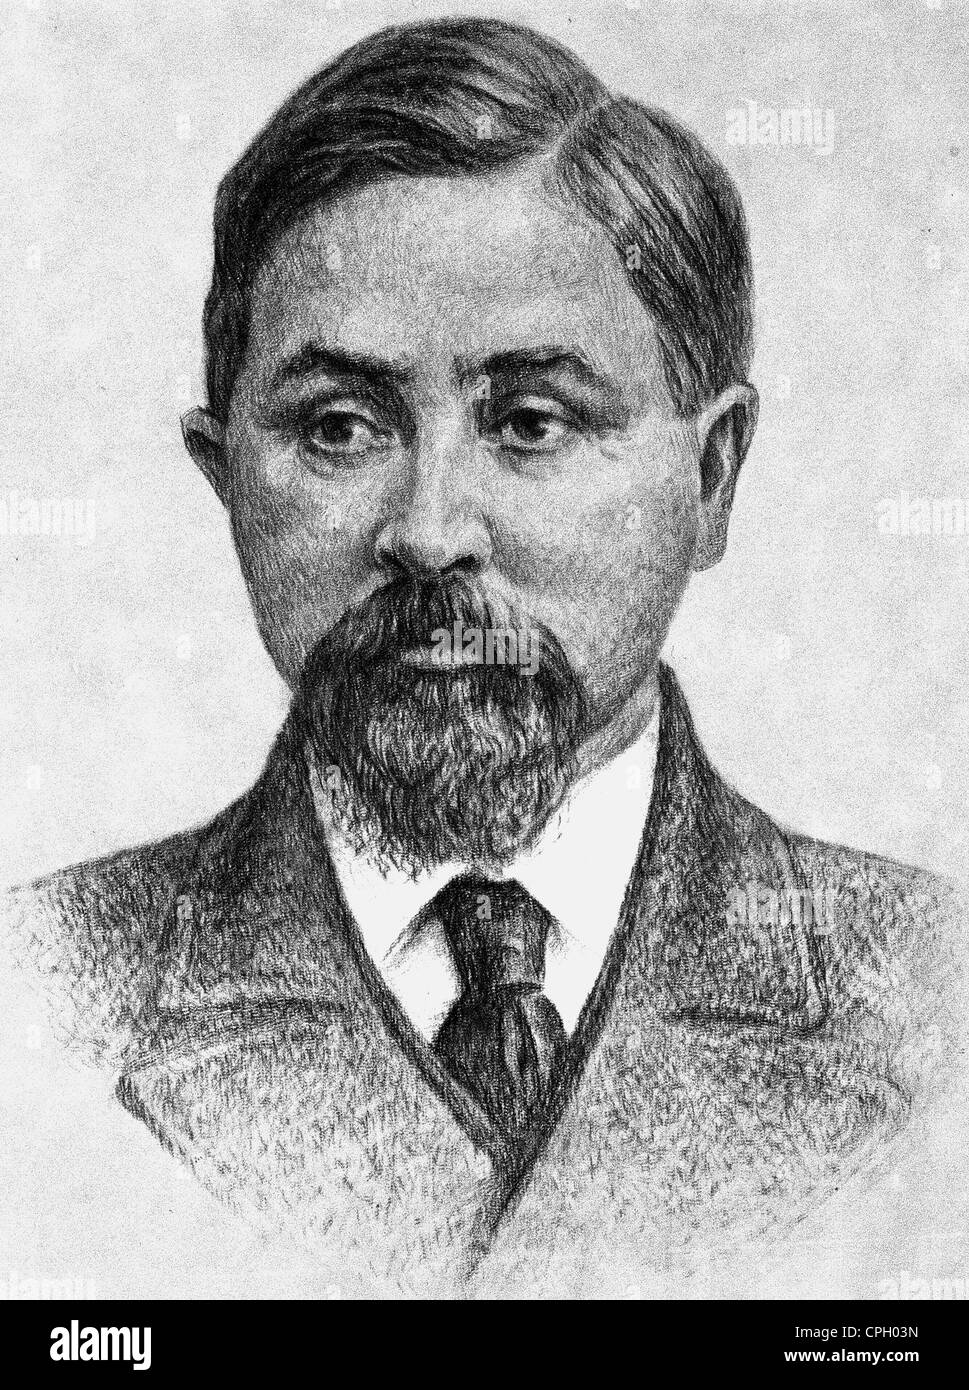 Mamin-Sibiryak, Dmitry Narkisovich, 25.10. (6.11.) 1852 - 2.11. (15.11) 1912, Russian author / writer, portrait, drawing, Stock Photo